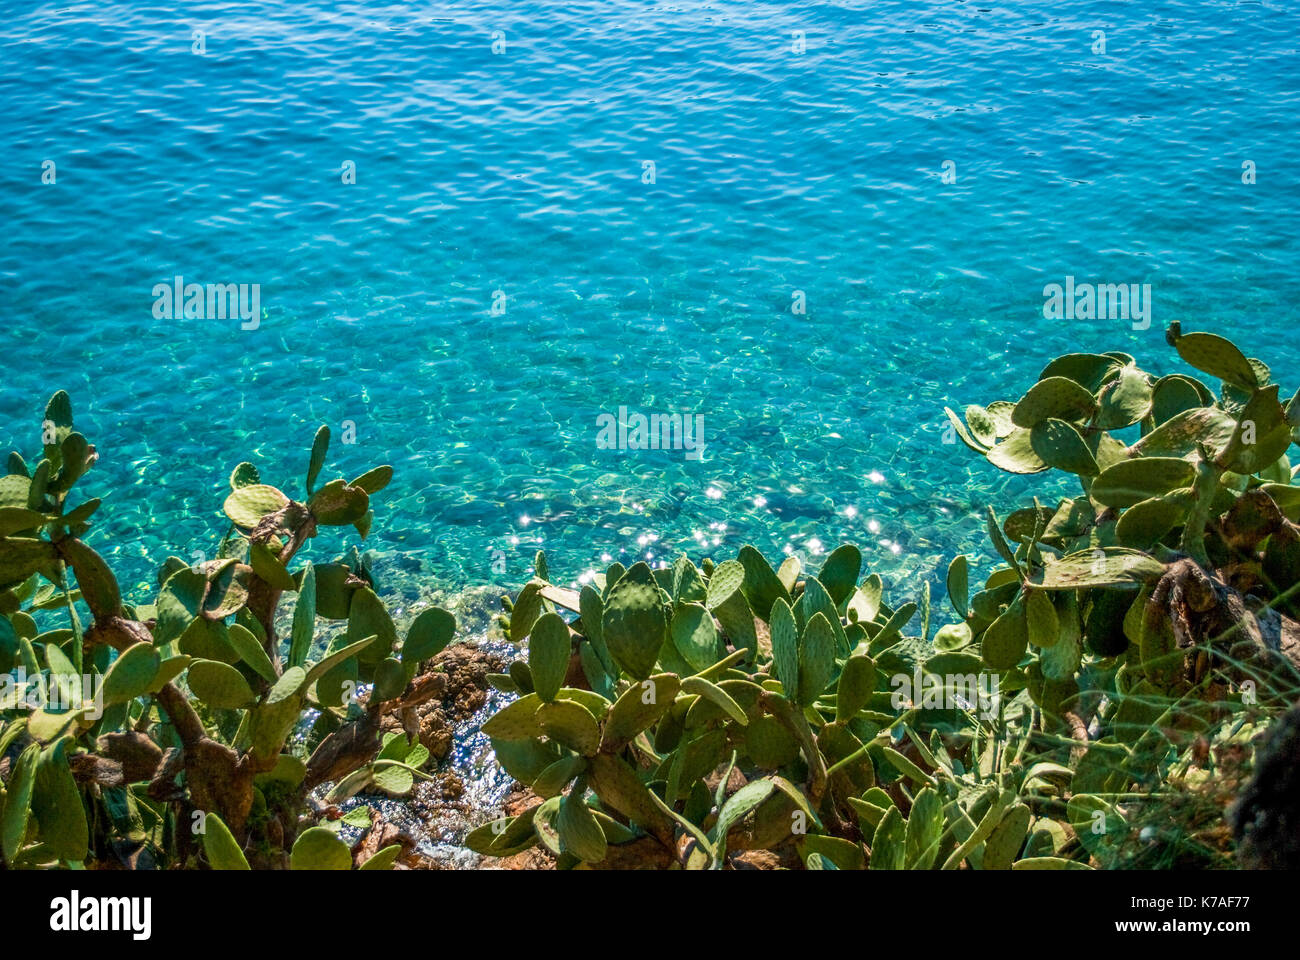 Grüne große Kakteen neben dem Meer, dem blauen Meer und der Sonne funkelt auf der Wasseroberfläche Stockfoto